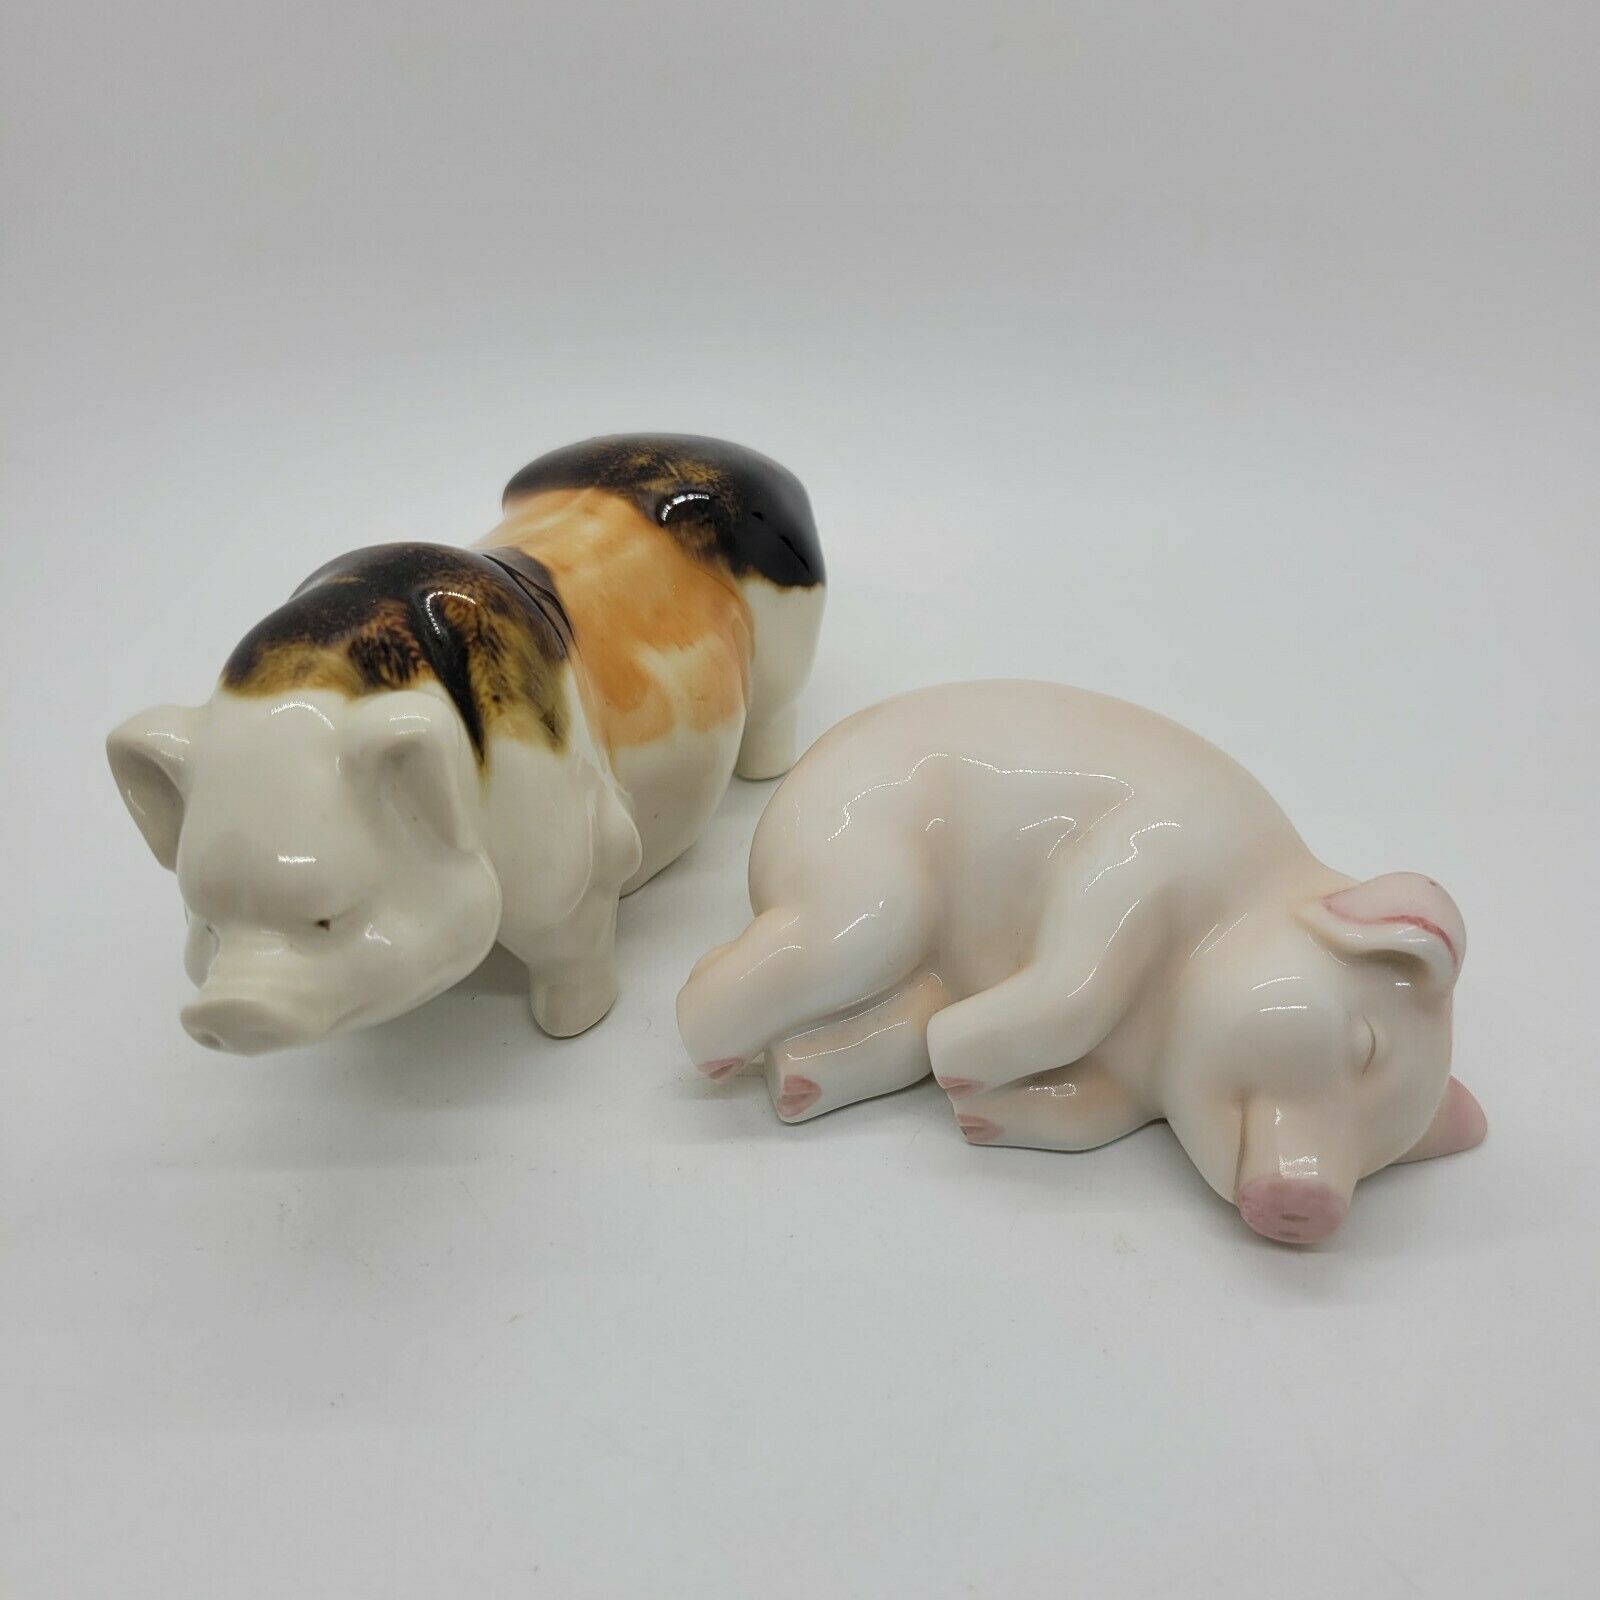 Two Ceramic Miniature Pig Figurines